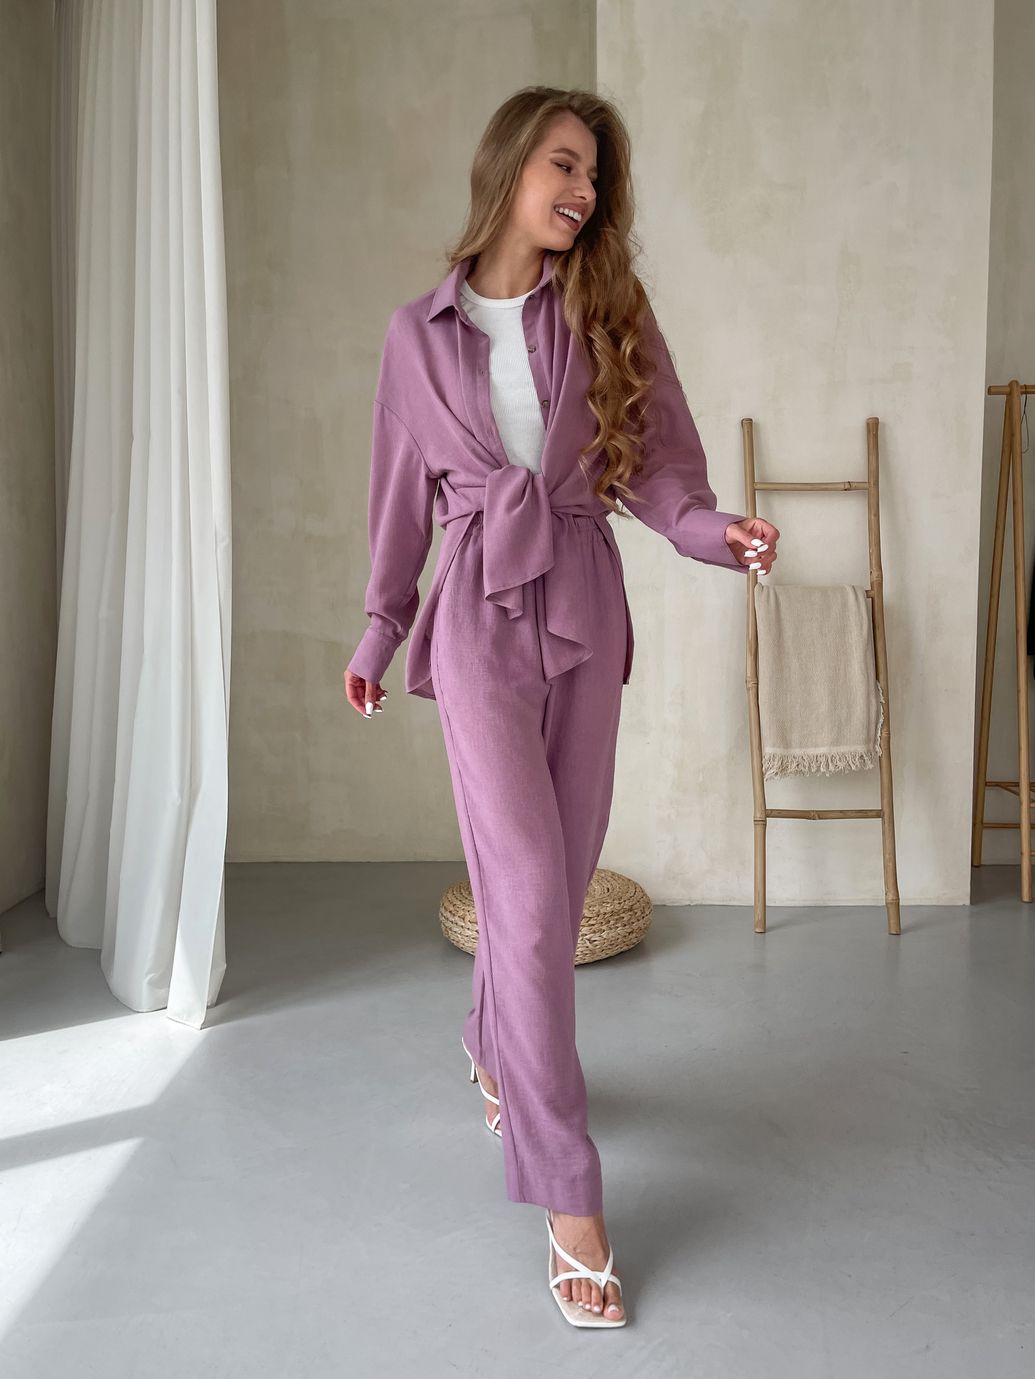 Купить Женский костюм с широкими штанами и рубашкой из льна розовый Merlini Лечче 100000543, размер 42-44 (S-M) в интернет-магазине